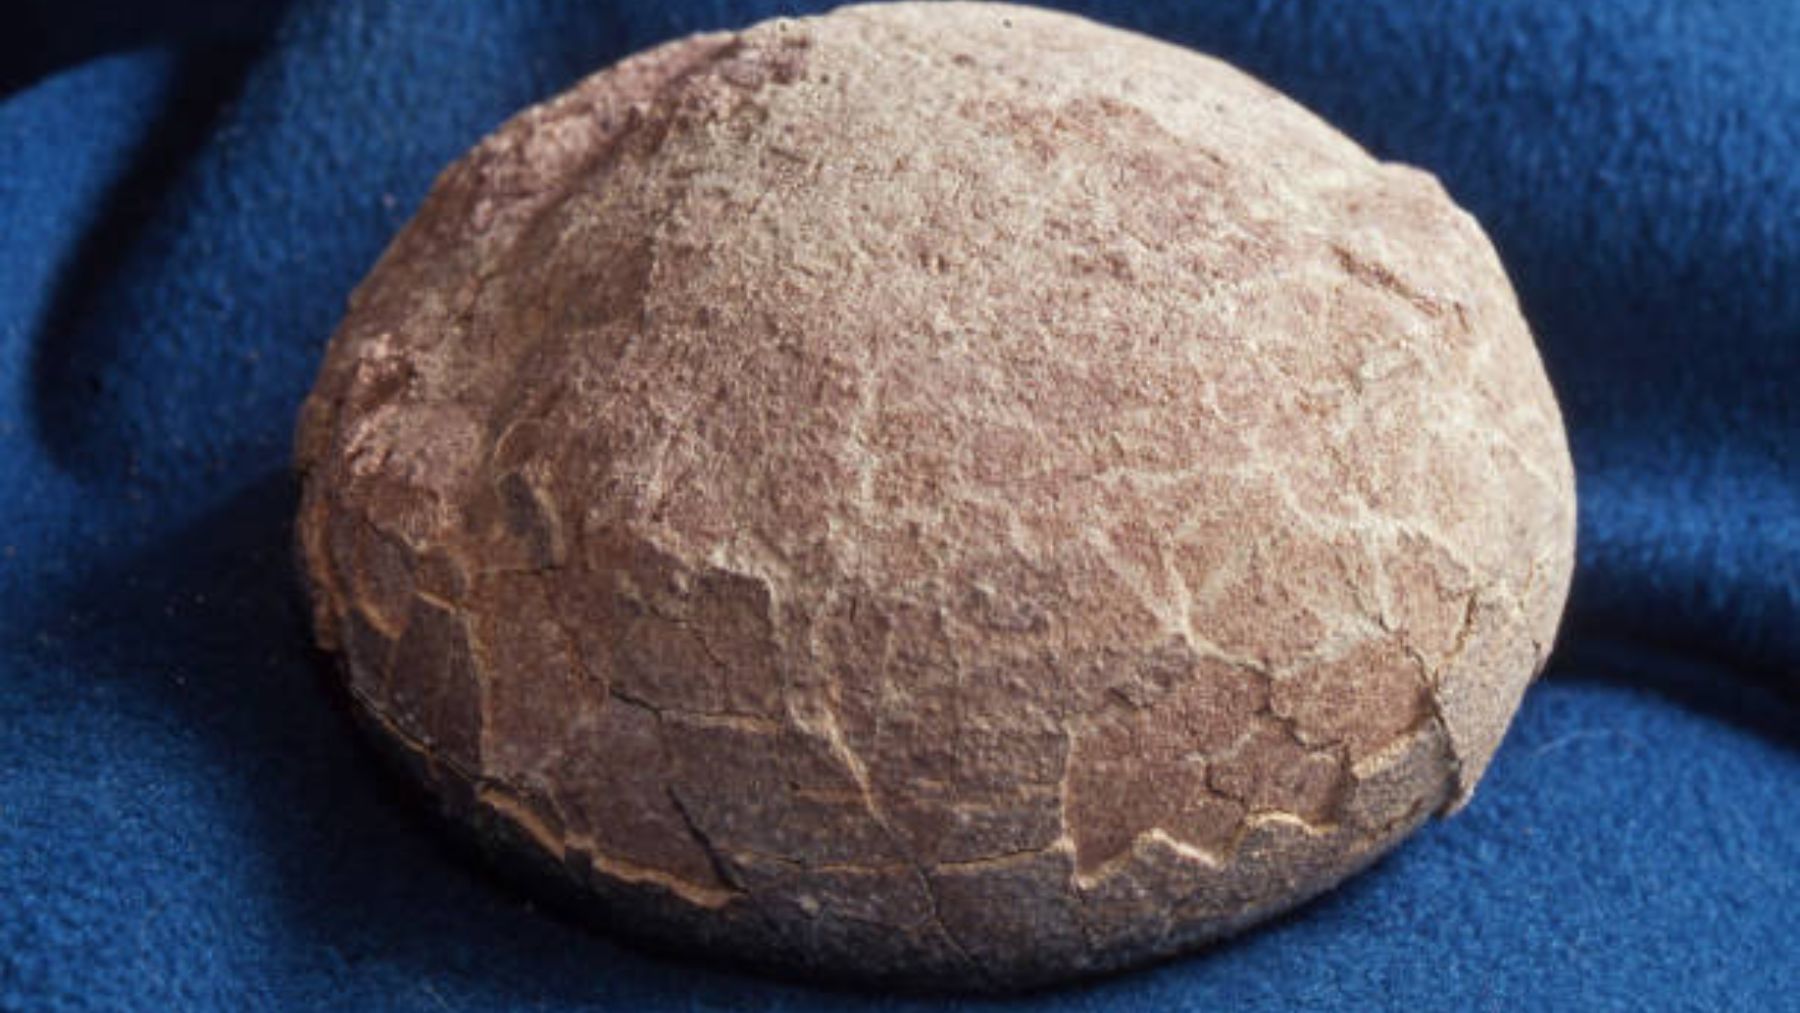 Nuevos estudios han revelado la identidad del dinosaurio dentro de un huevo hallado en 1993